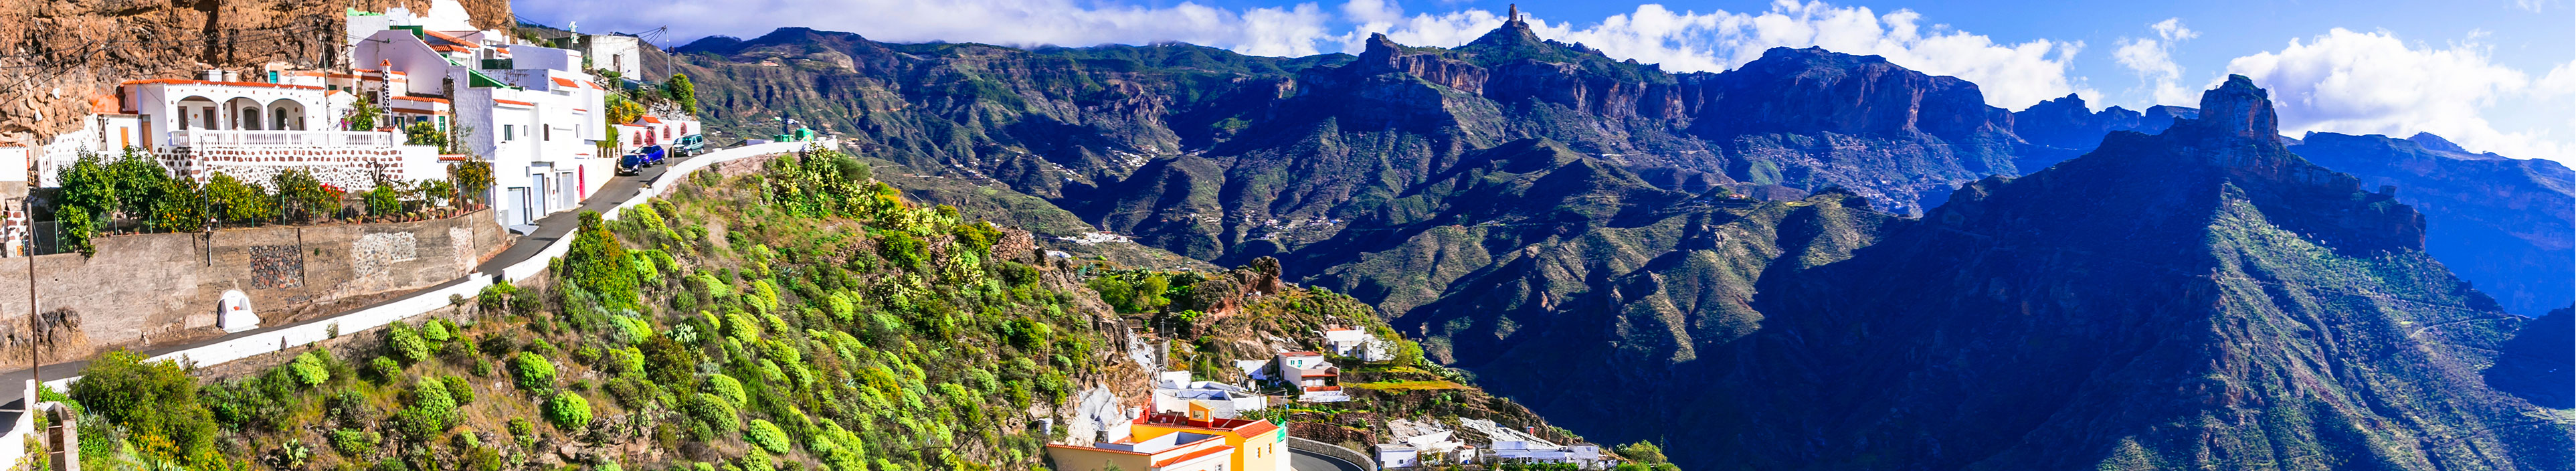 Urlaub Gran Canaria. Strasse in den Bergen.